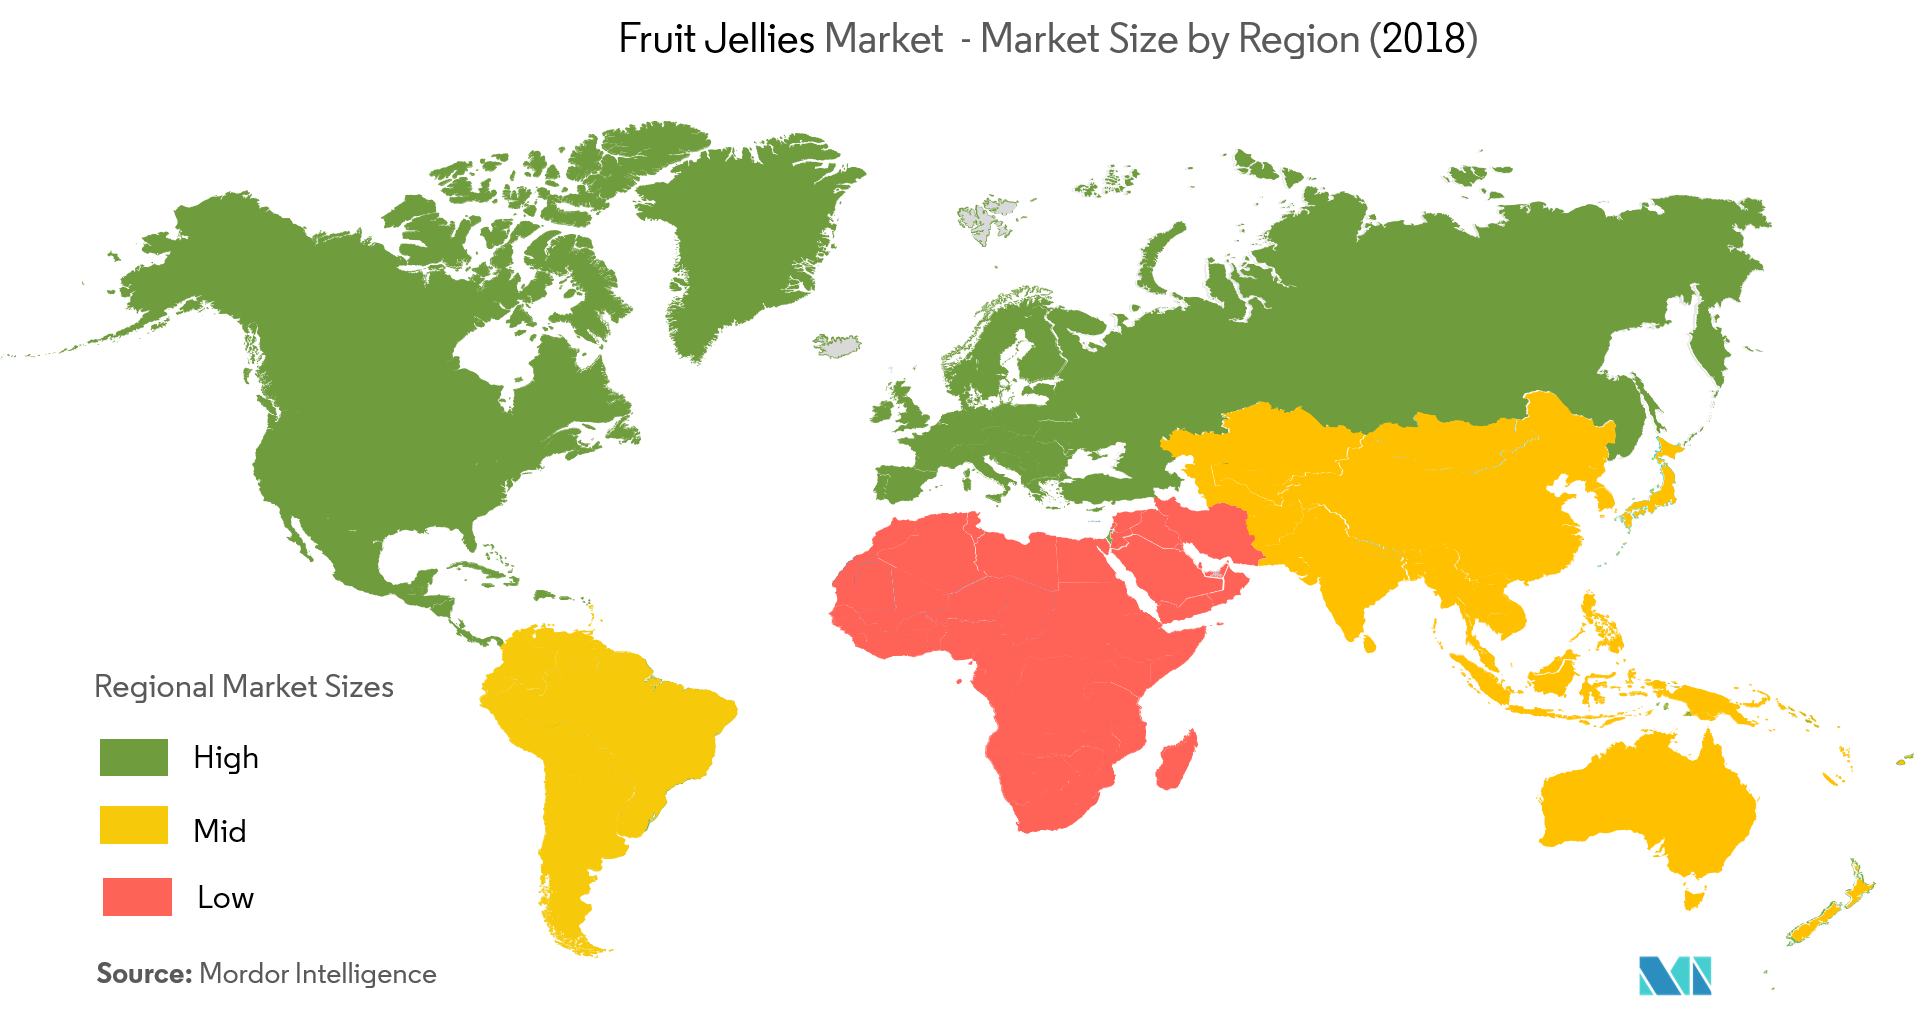 Fruit Jellies Market - Market Size by Region